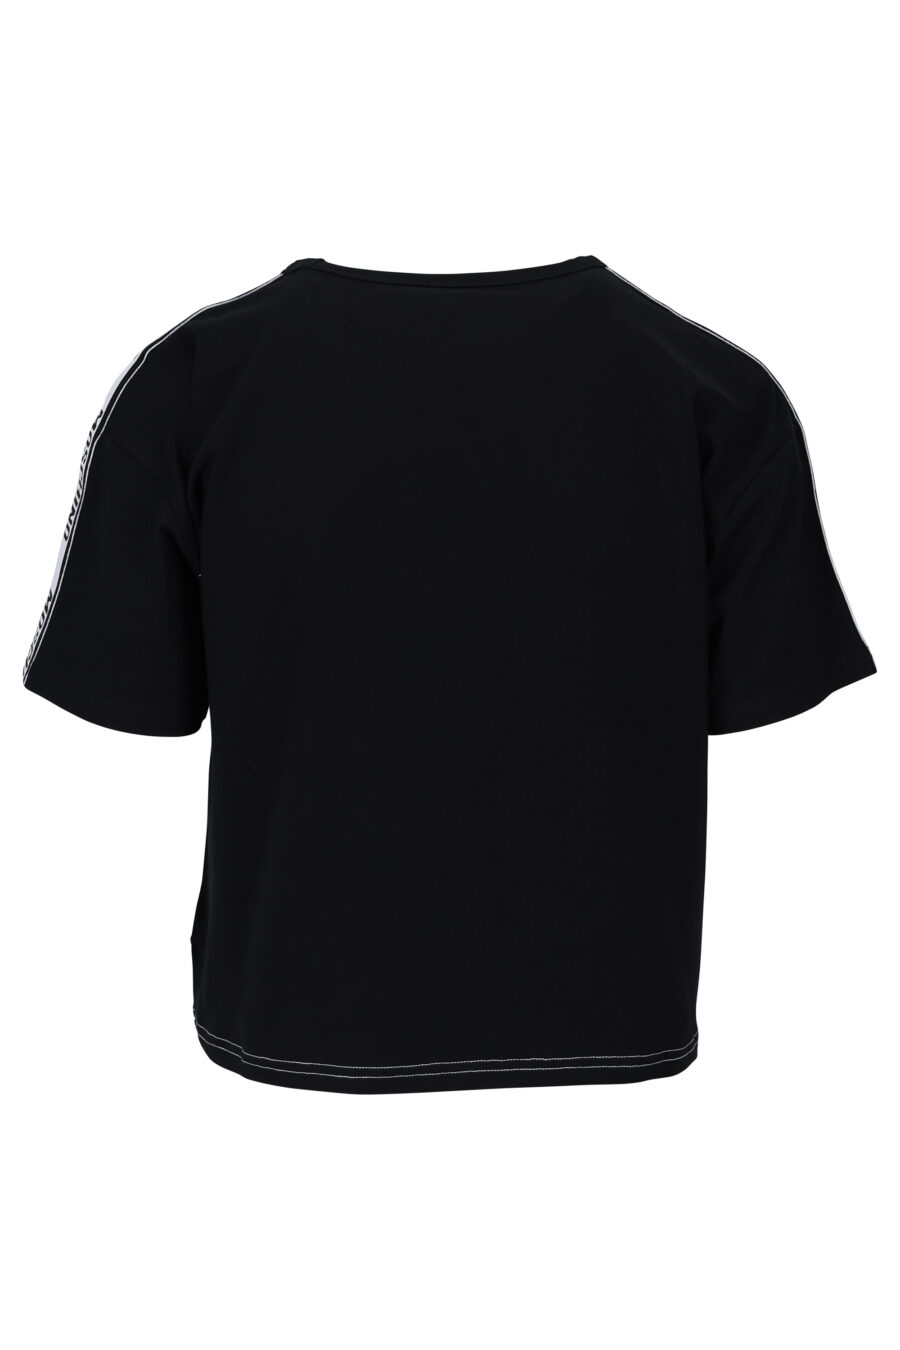 T-shirt branca com mangas e costas pretas e logótipo com fita - 667113062037 1